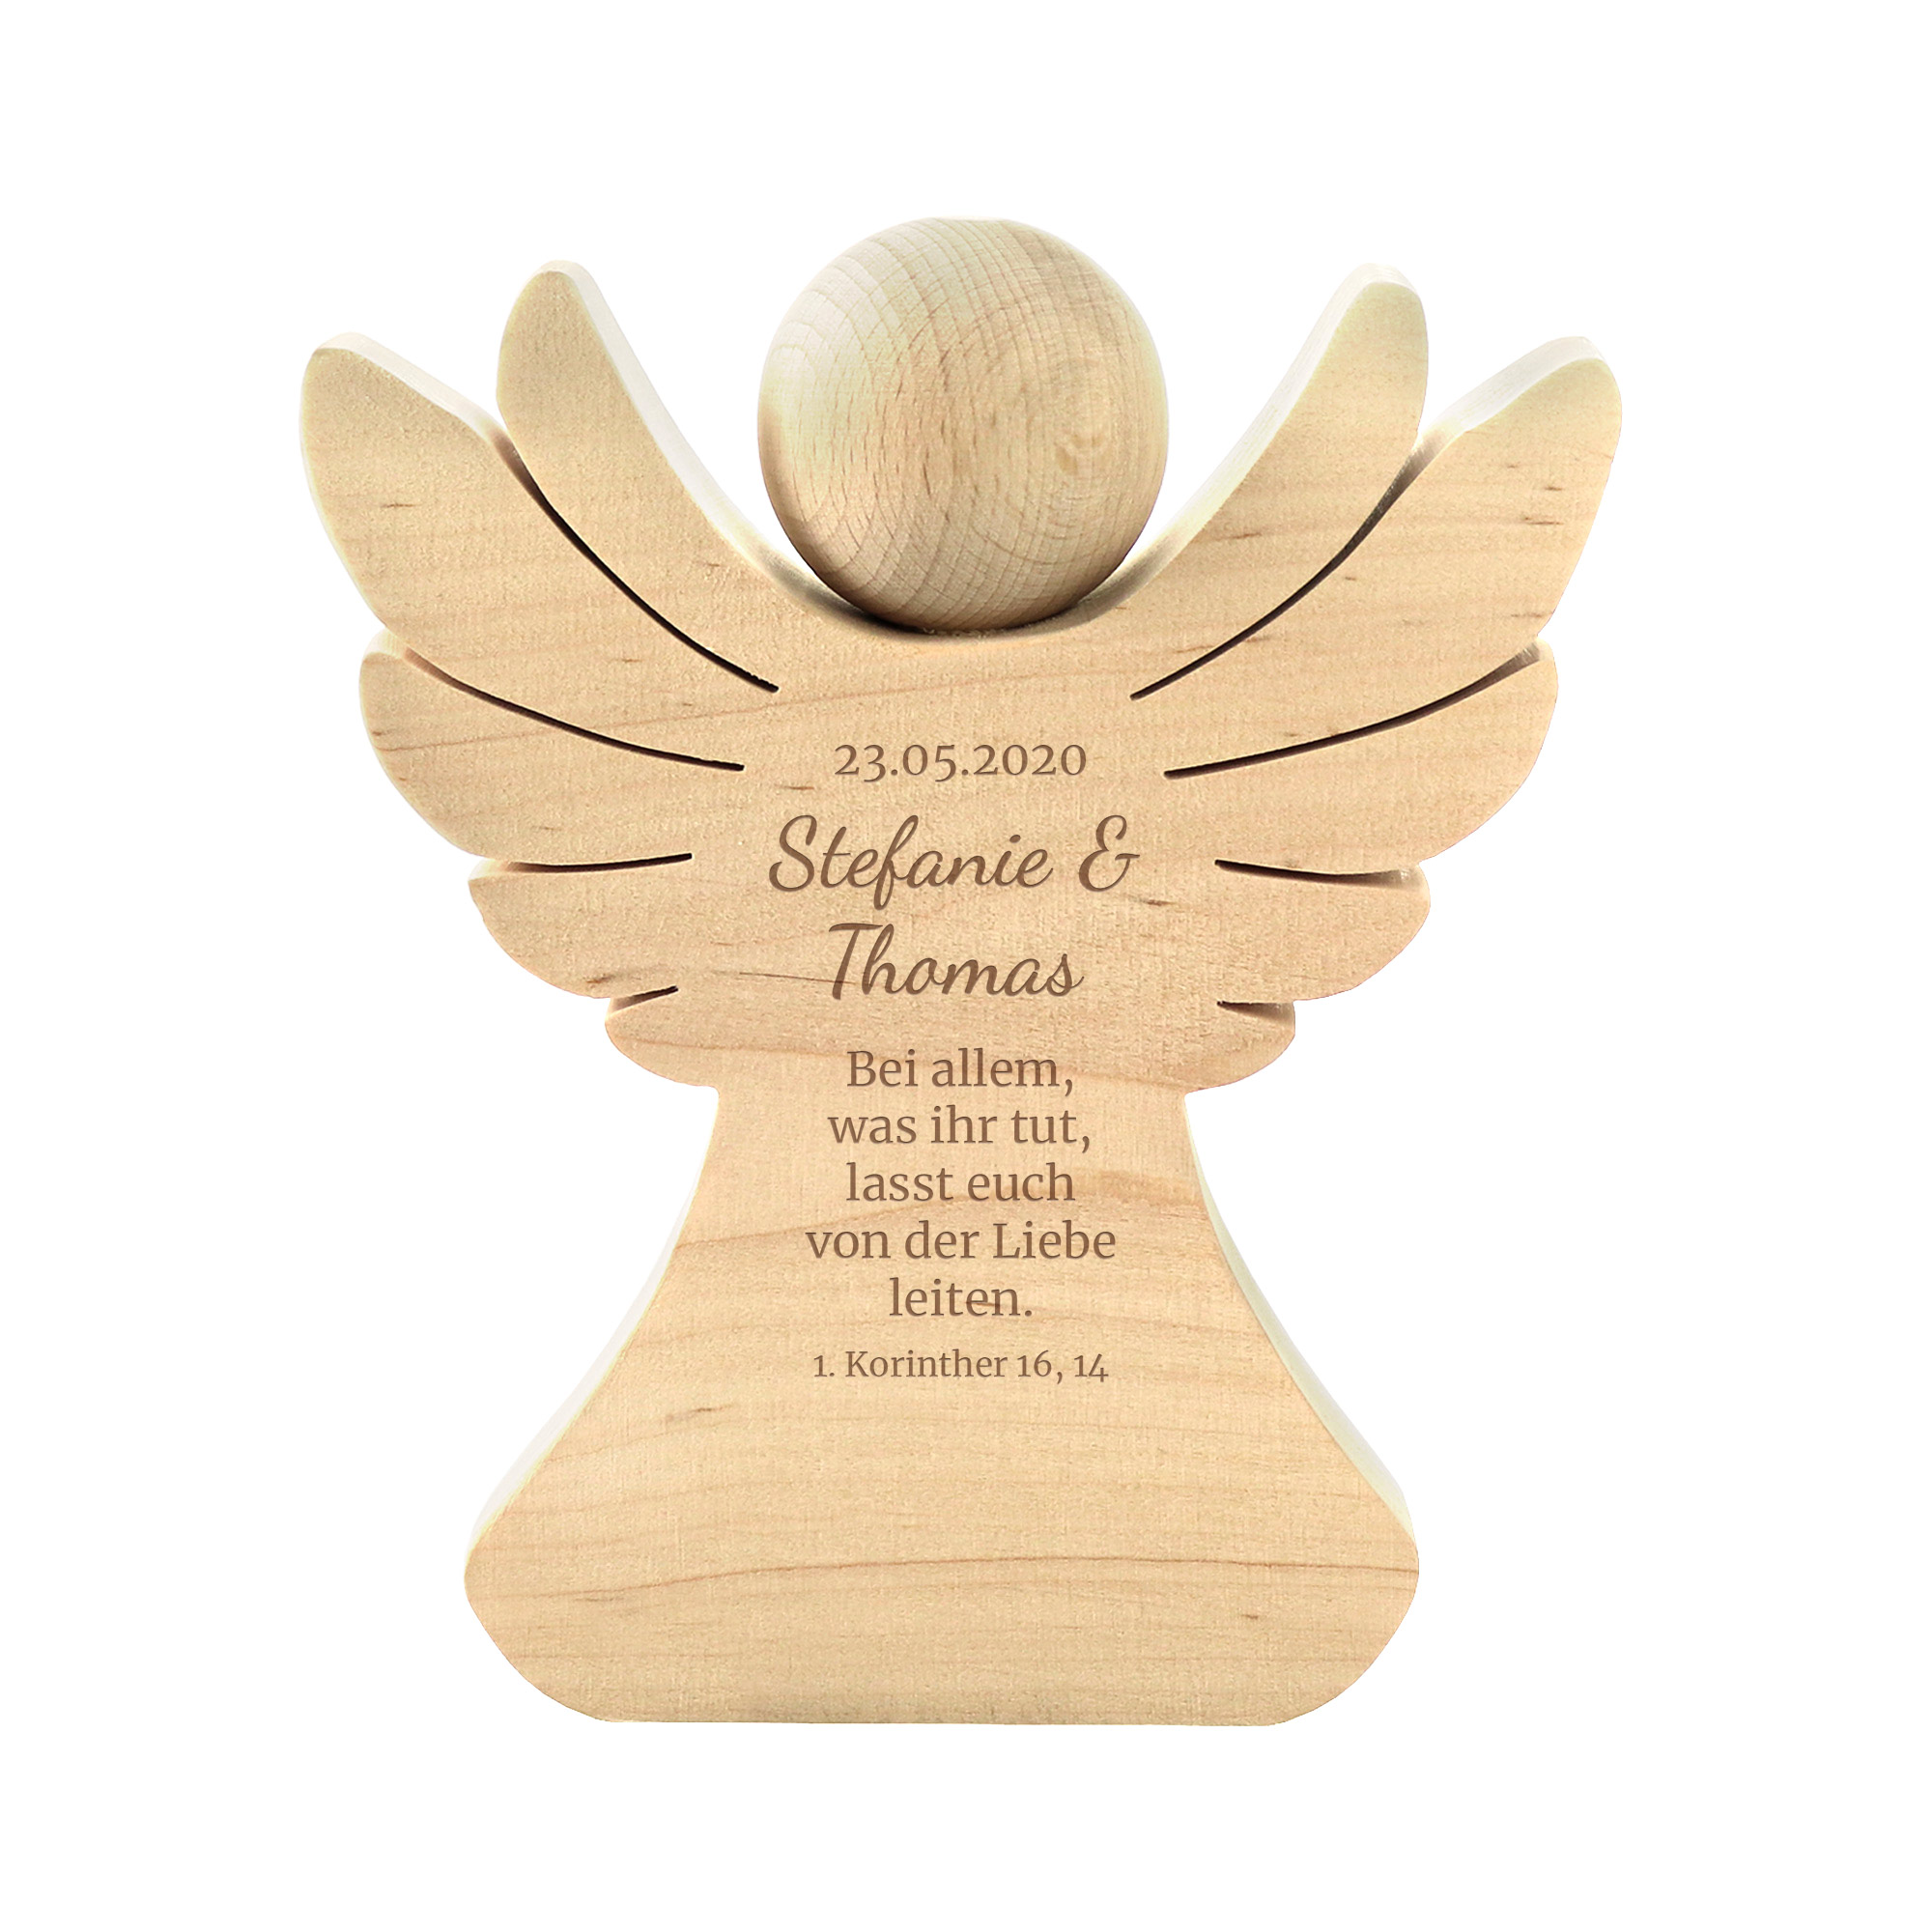 Engel aus Holz mit Gravur zur Hochzeit - Segen - Personalisiert